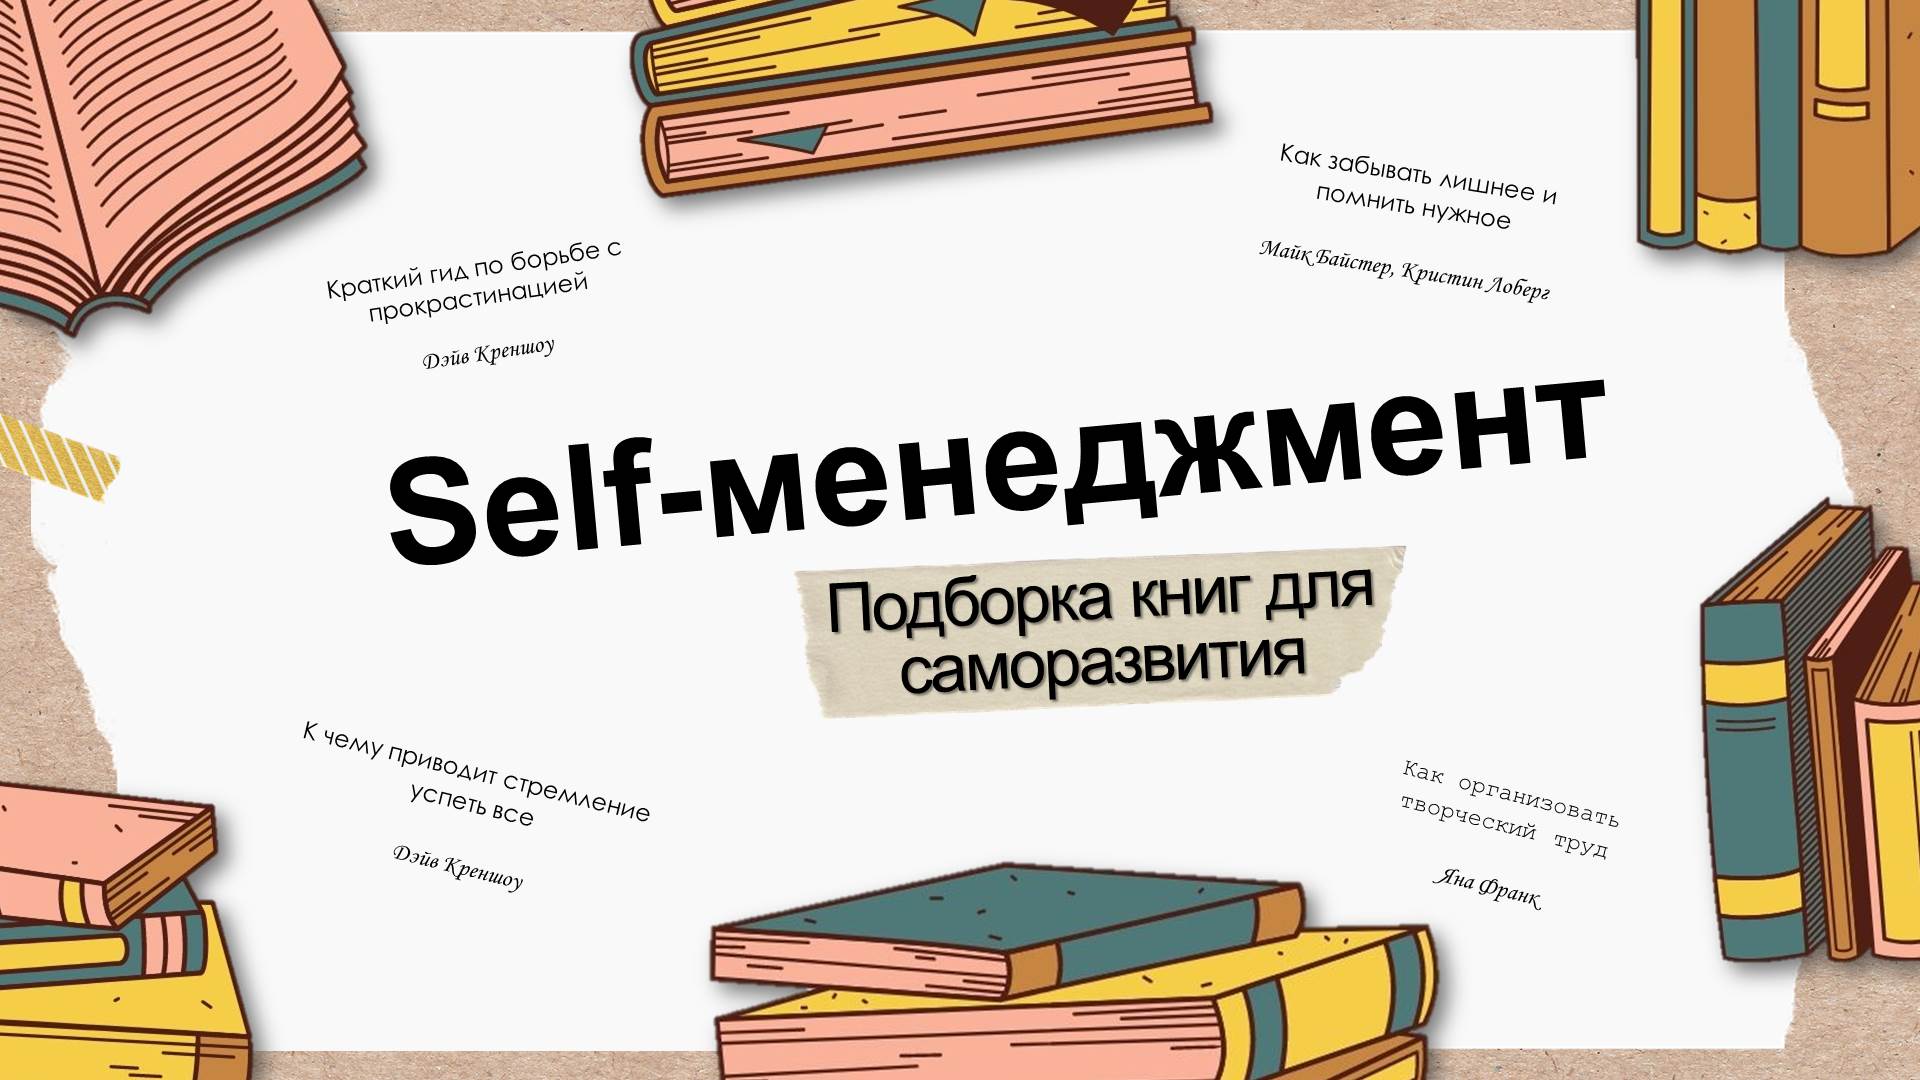 Новые книги pdf. Книги для саморазвития. Селф менеджмент. Селф менеджмент книги pdf.